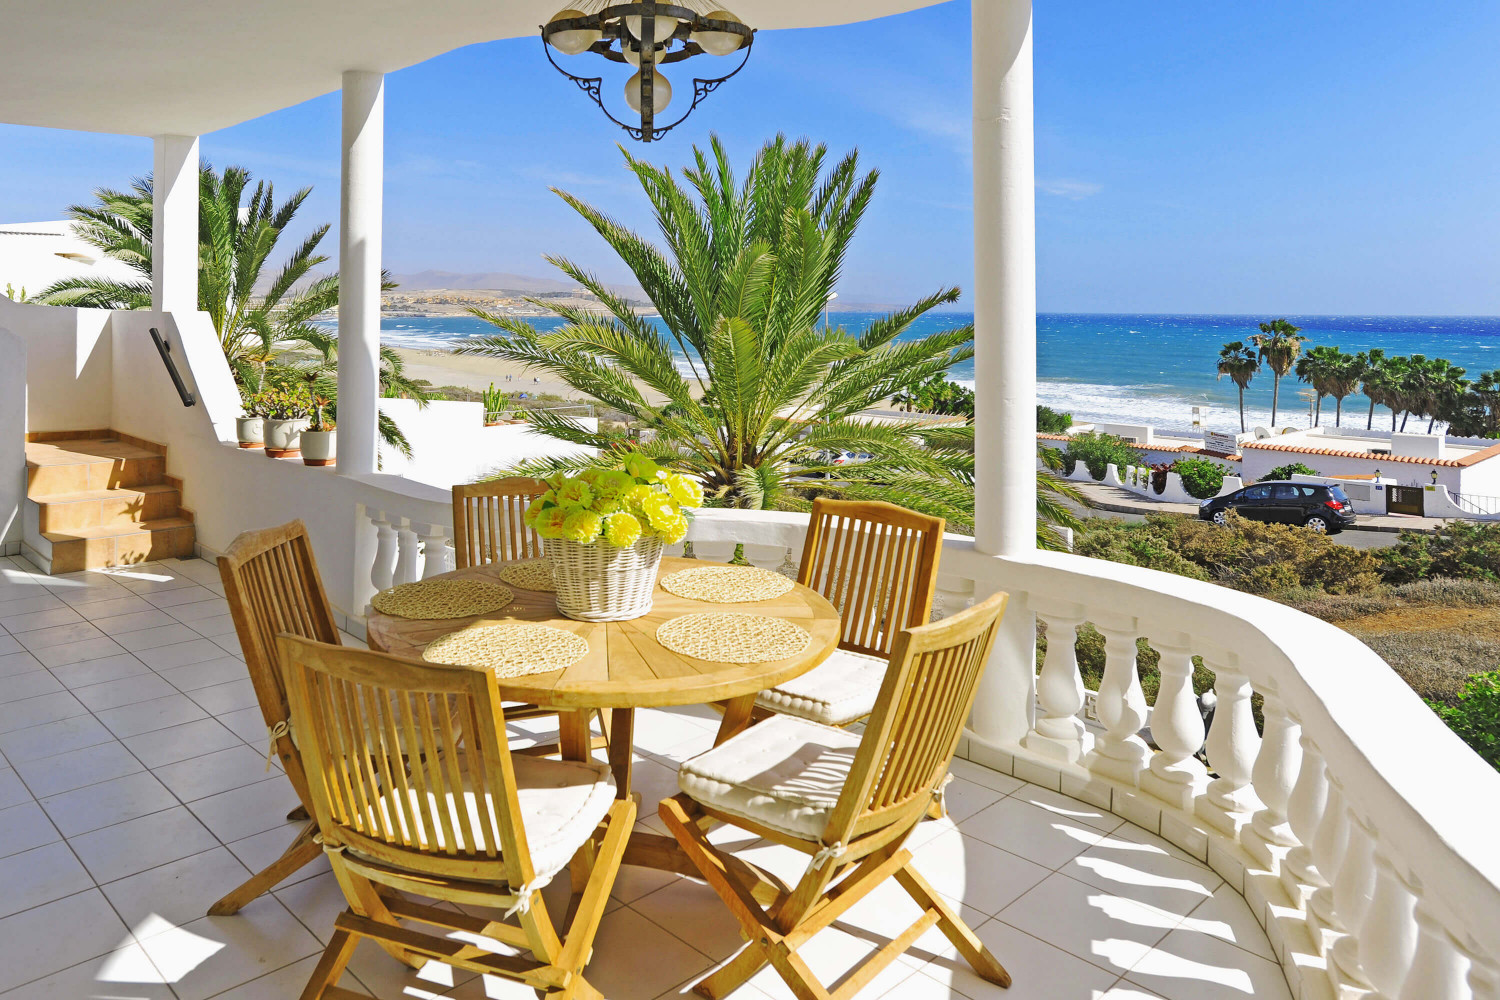 Kaunis loma-asunto rannalla Costa Calmassa, Välimeren tyyliin sisustettu, lyömättömät näkymät